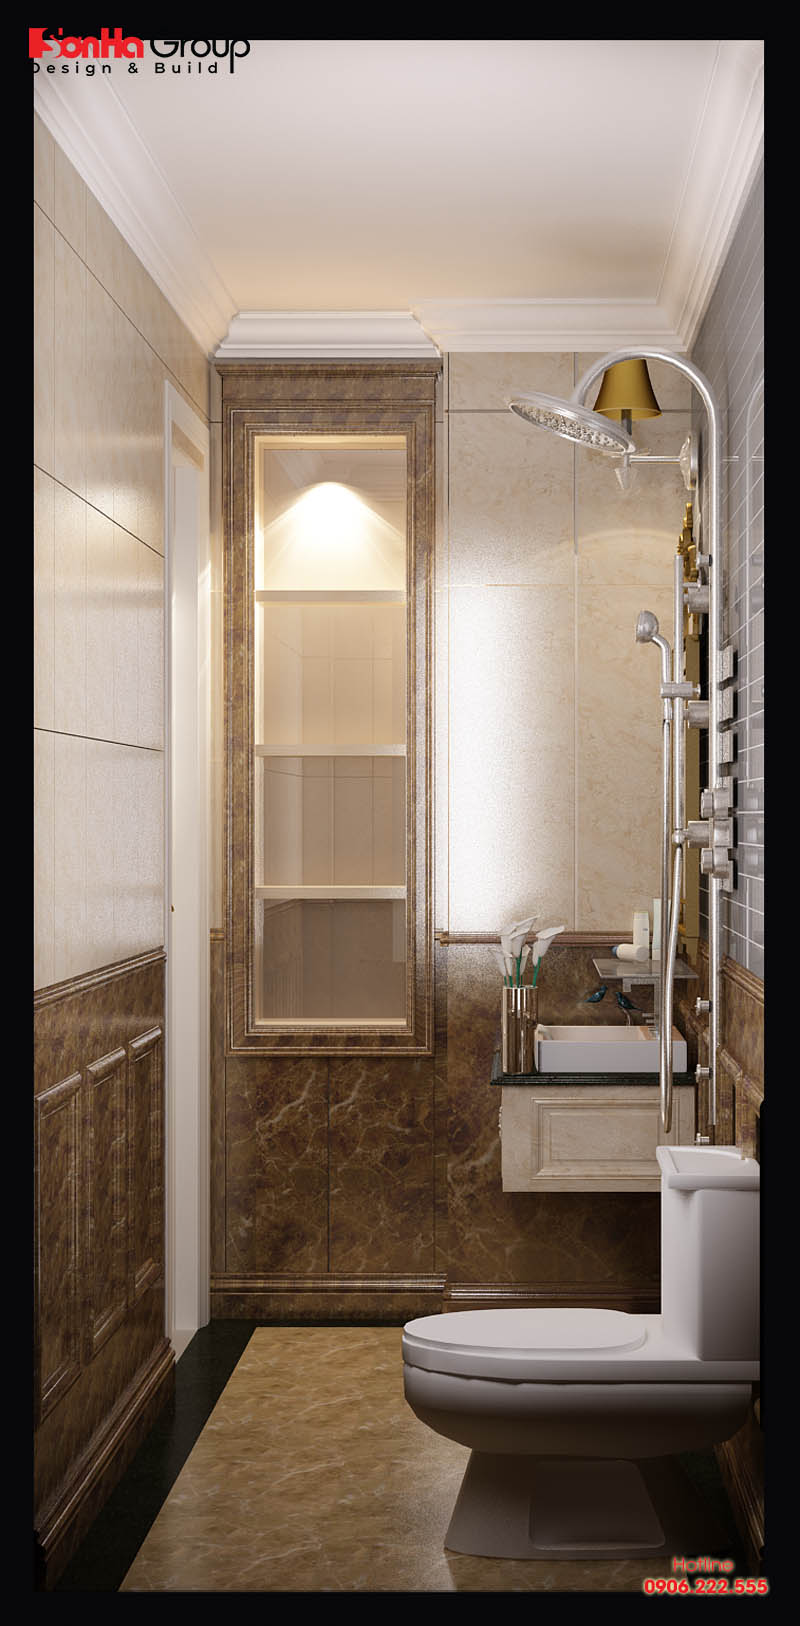 Phòng tắm kết hợp WC được đầu tư nội thất cao cấp tiện nghi trong mỗi phòng ngủ của nhà phố hiện đại 